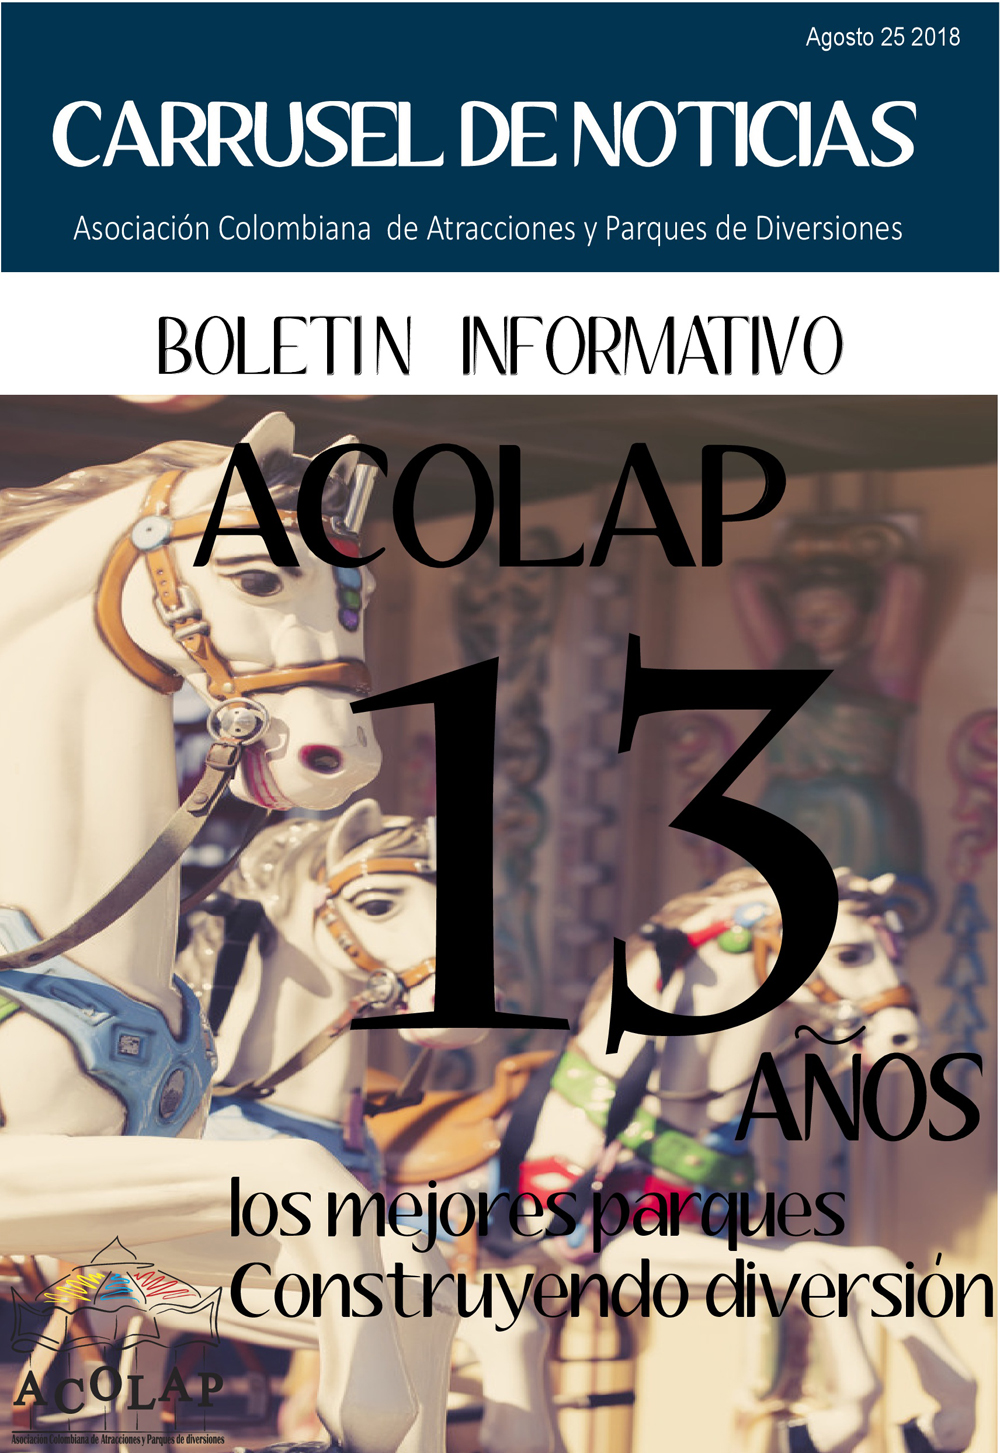 Boletin-Informativo-aCOLAP-13-Anos-001